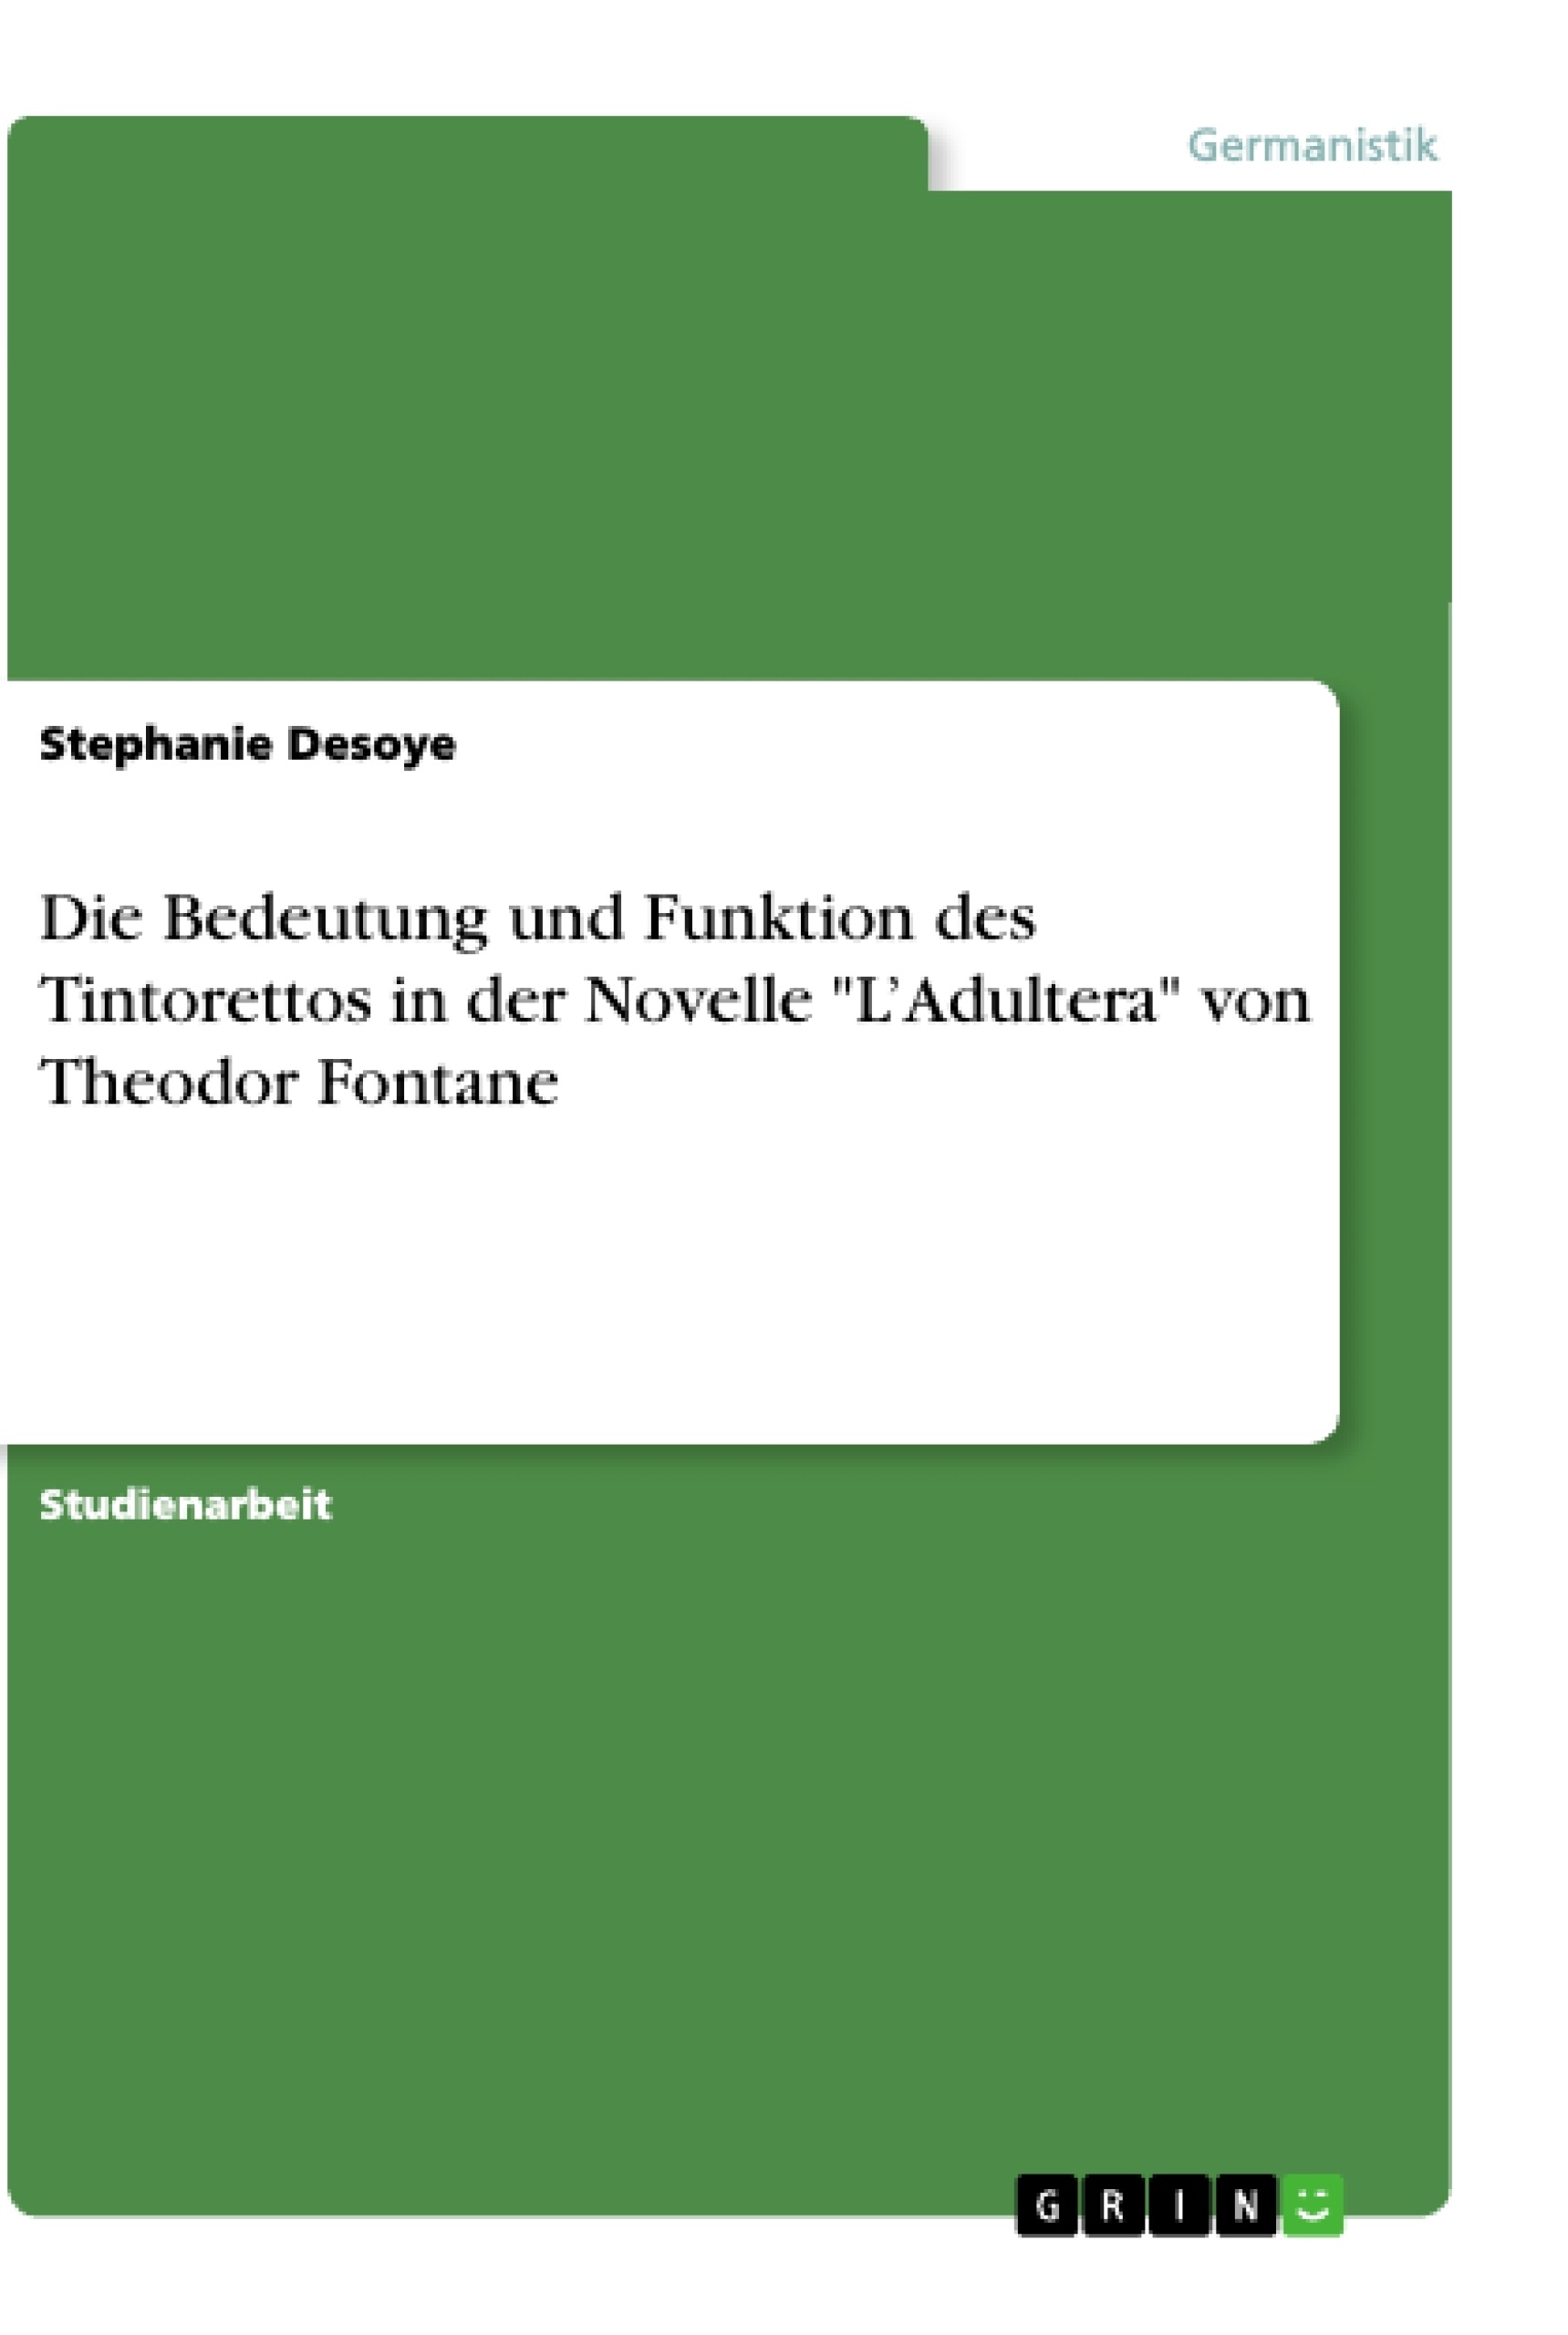 Titel: Die Bedeutung und Funktion des Tintorettos in der Novelle "L’Adultera" von Theodor Fontane